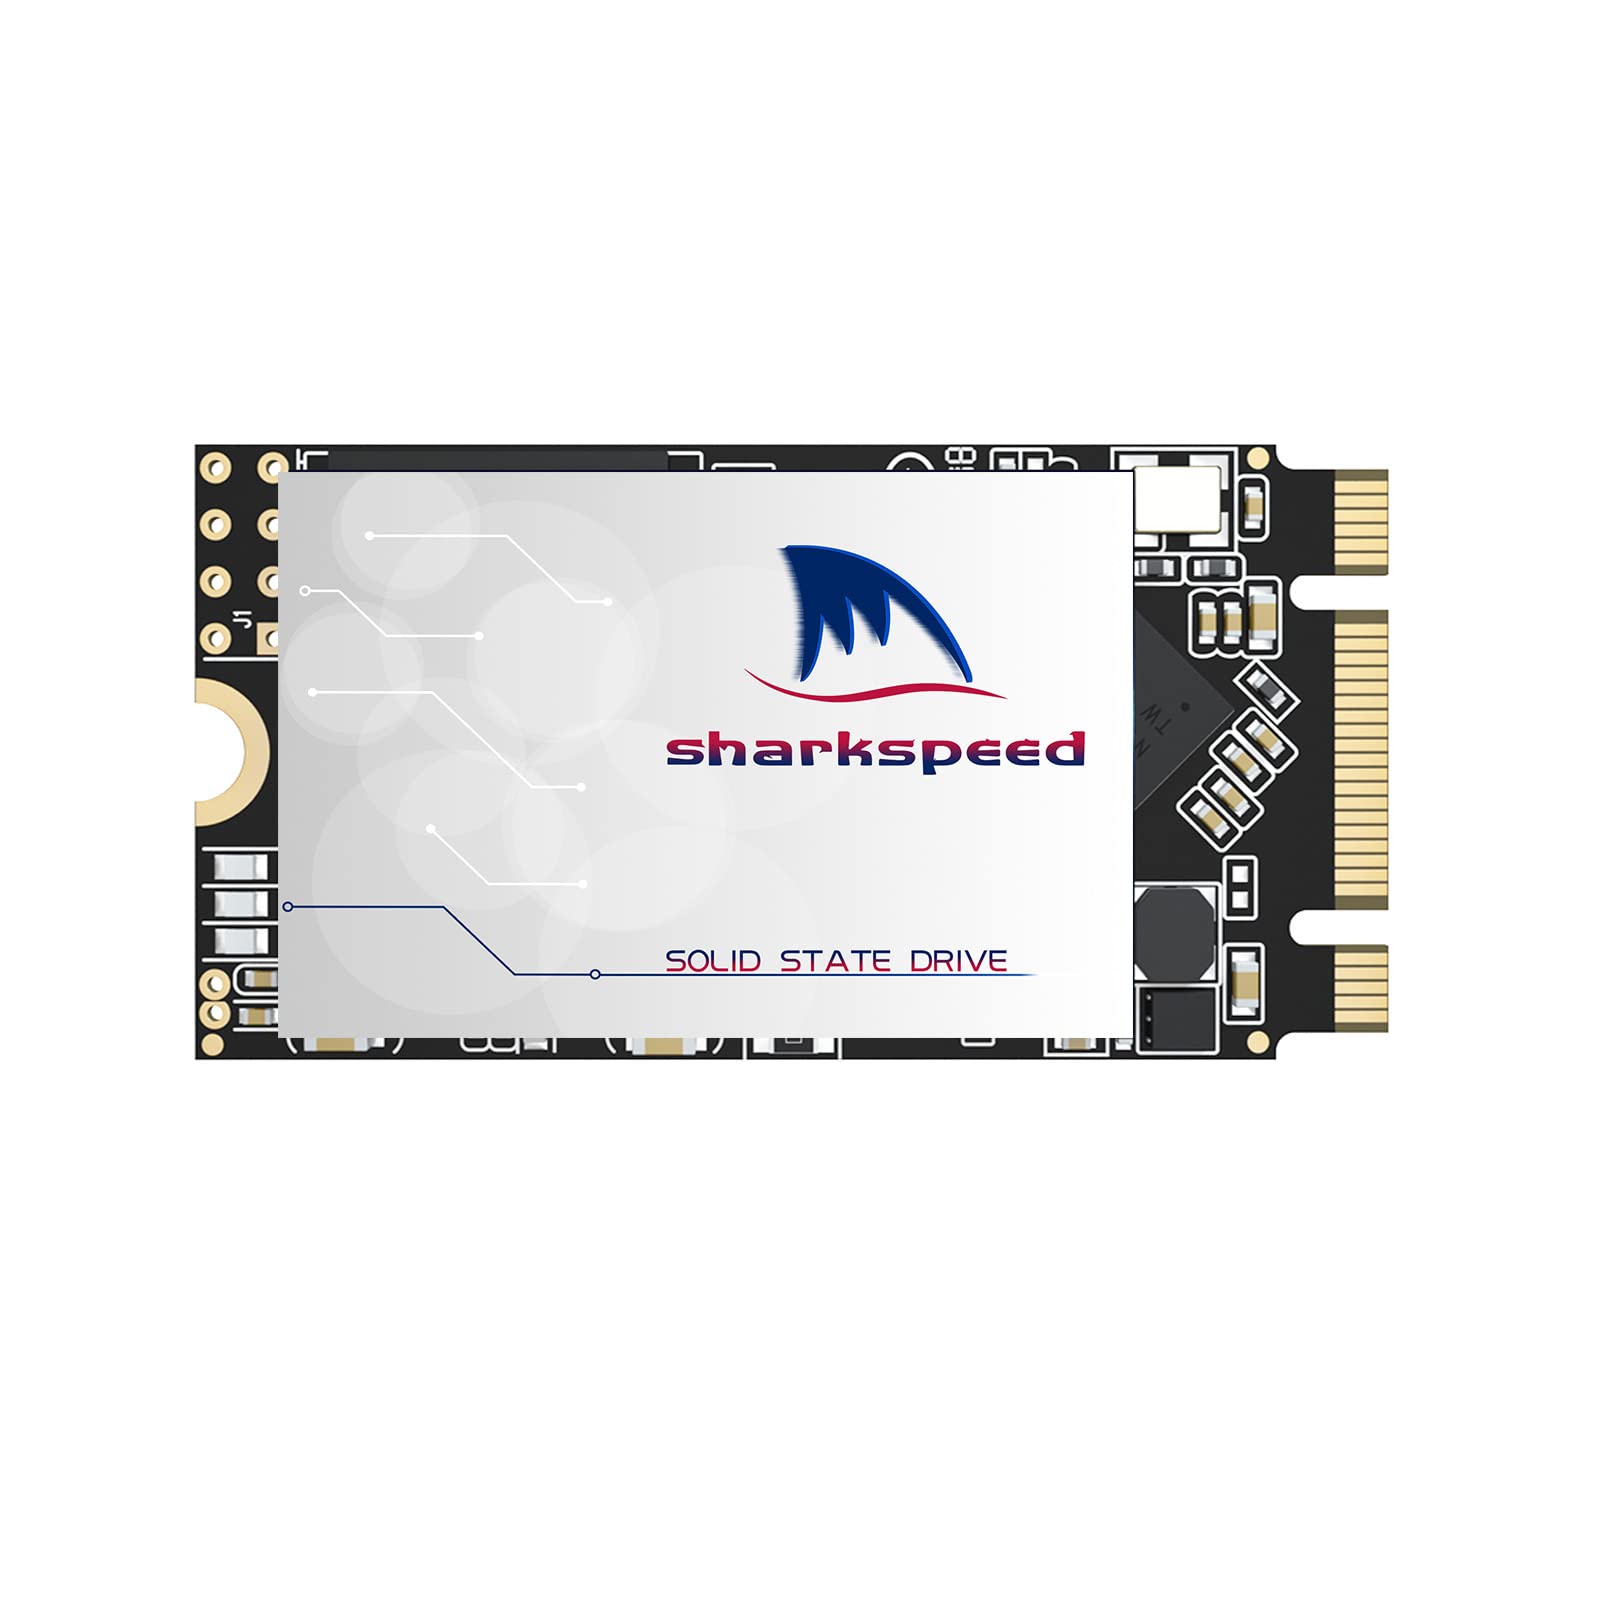 SSD M.2 2242 128GB Sharkspeed Plus Internes M2 SSD 3D NAND SATA III 6 Gb/s,Festplatte intern Hohe Leistung Solid State Drive für Notebooks,Desktop PC(128GB M.2 2242)